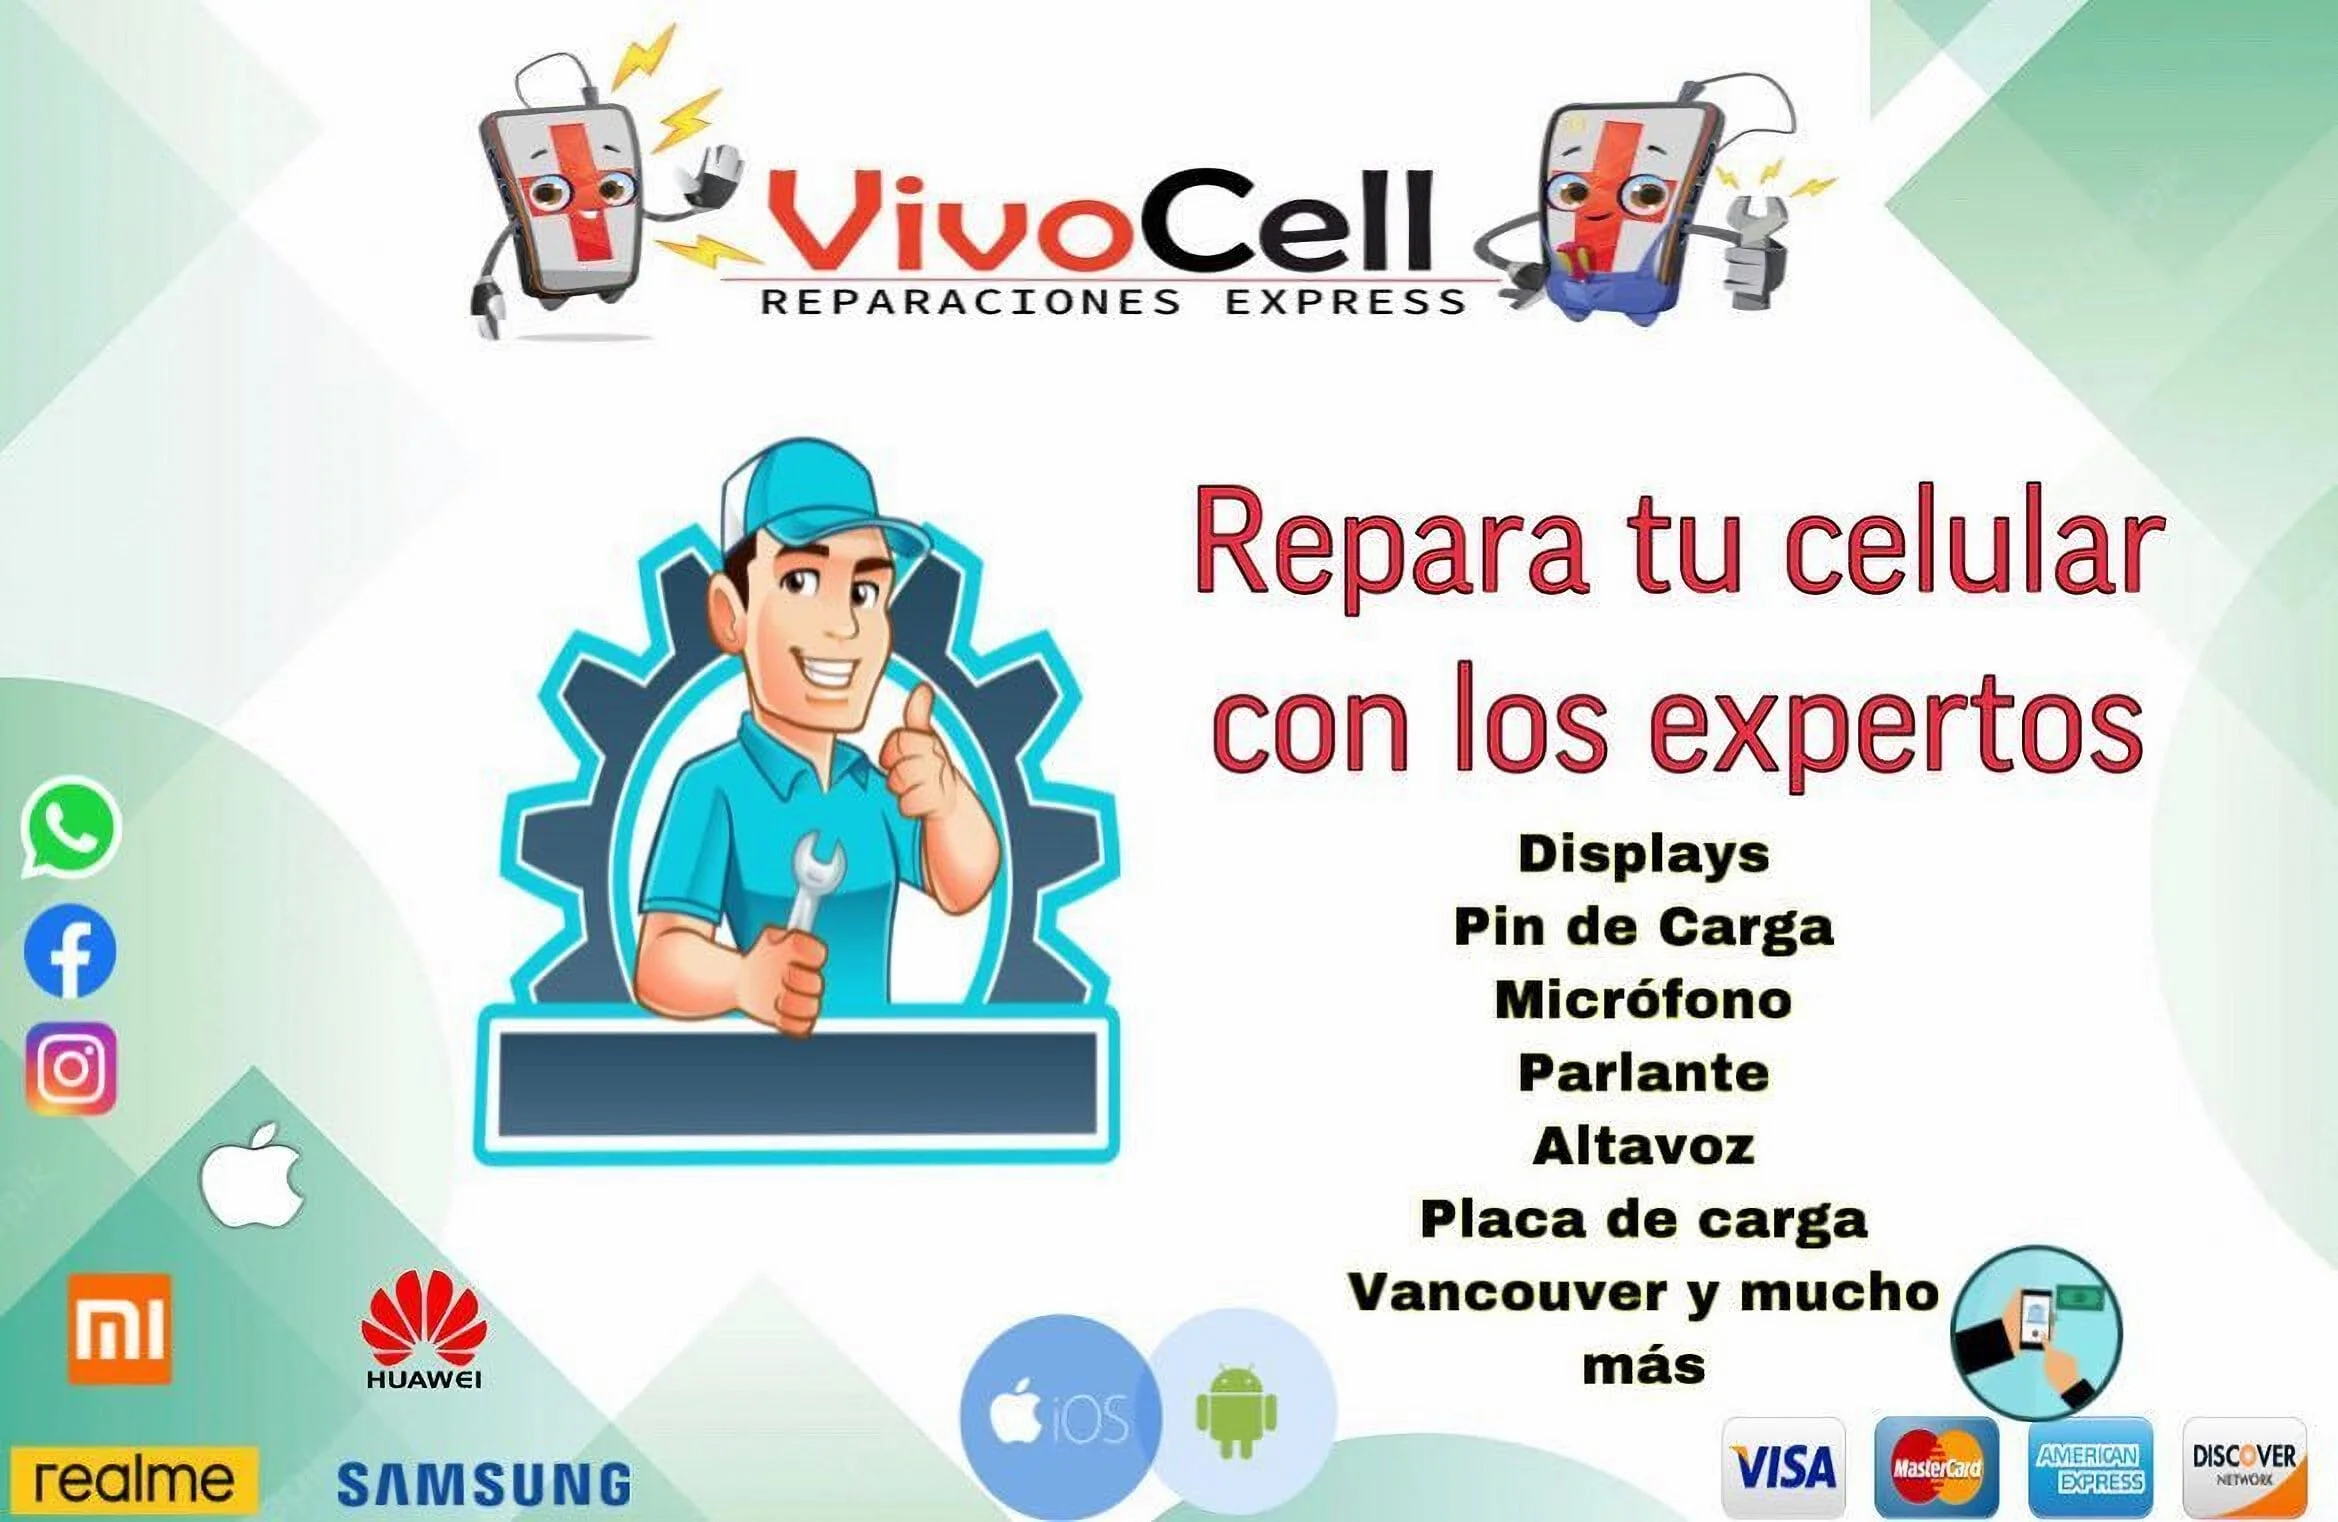 Reparación de Celulares-vivocell-reparaciones-express-15160